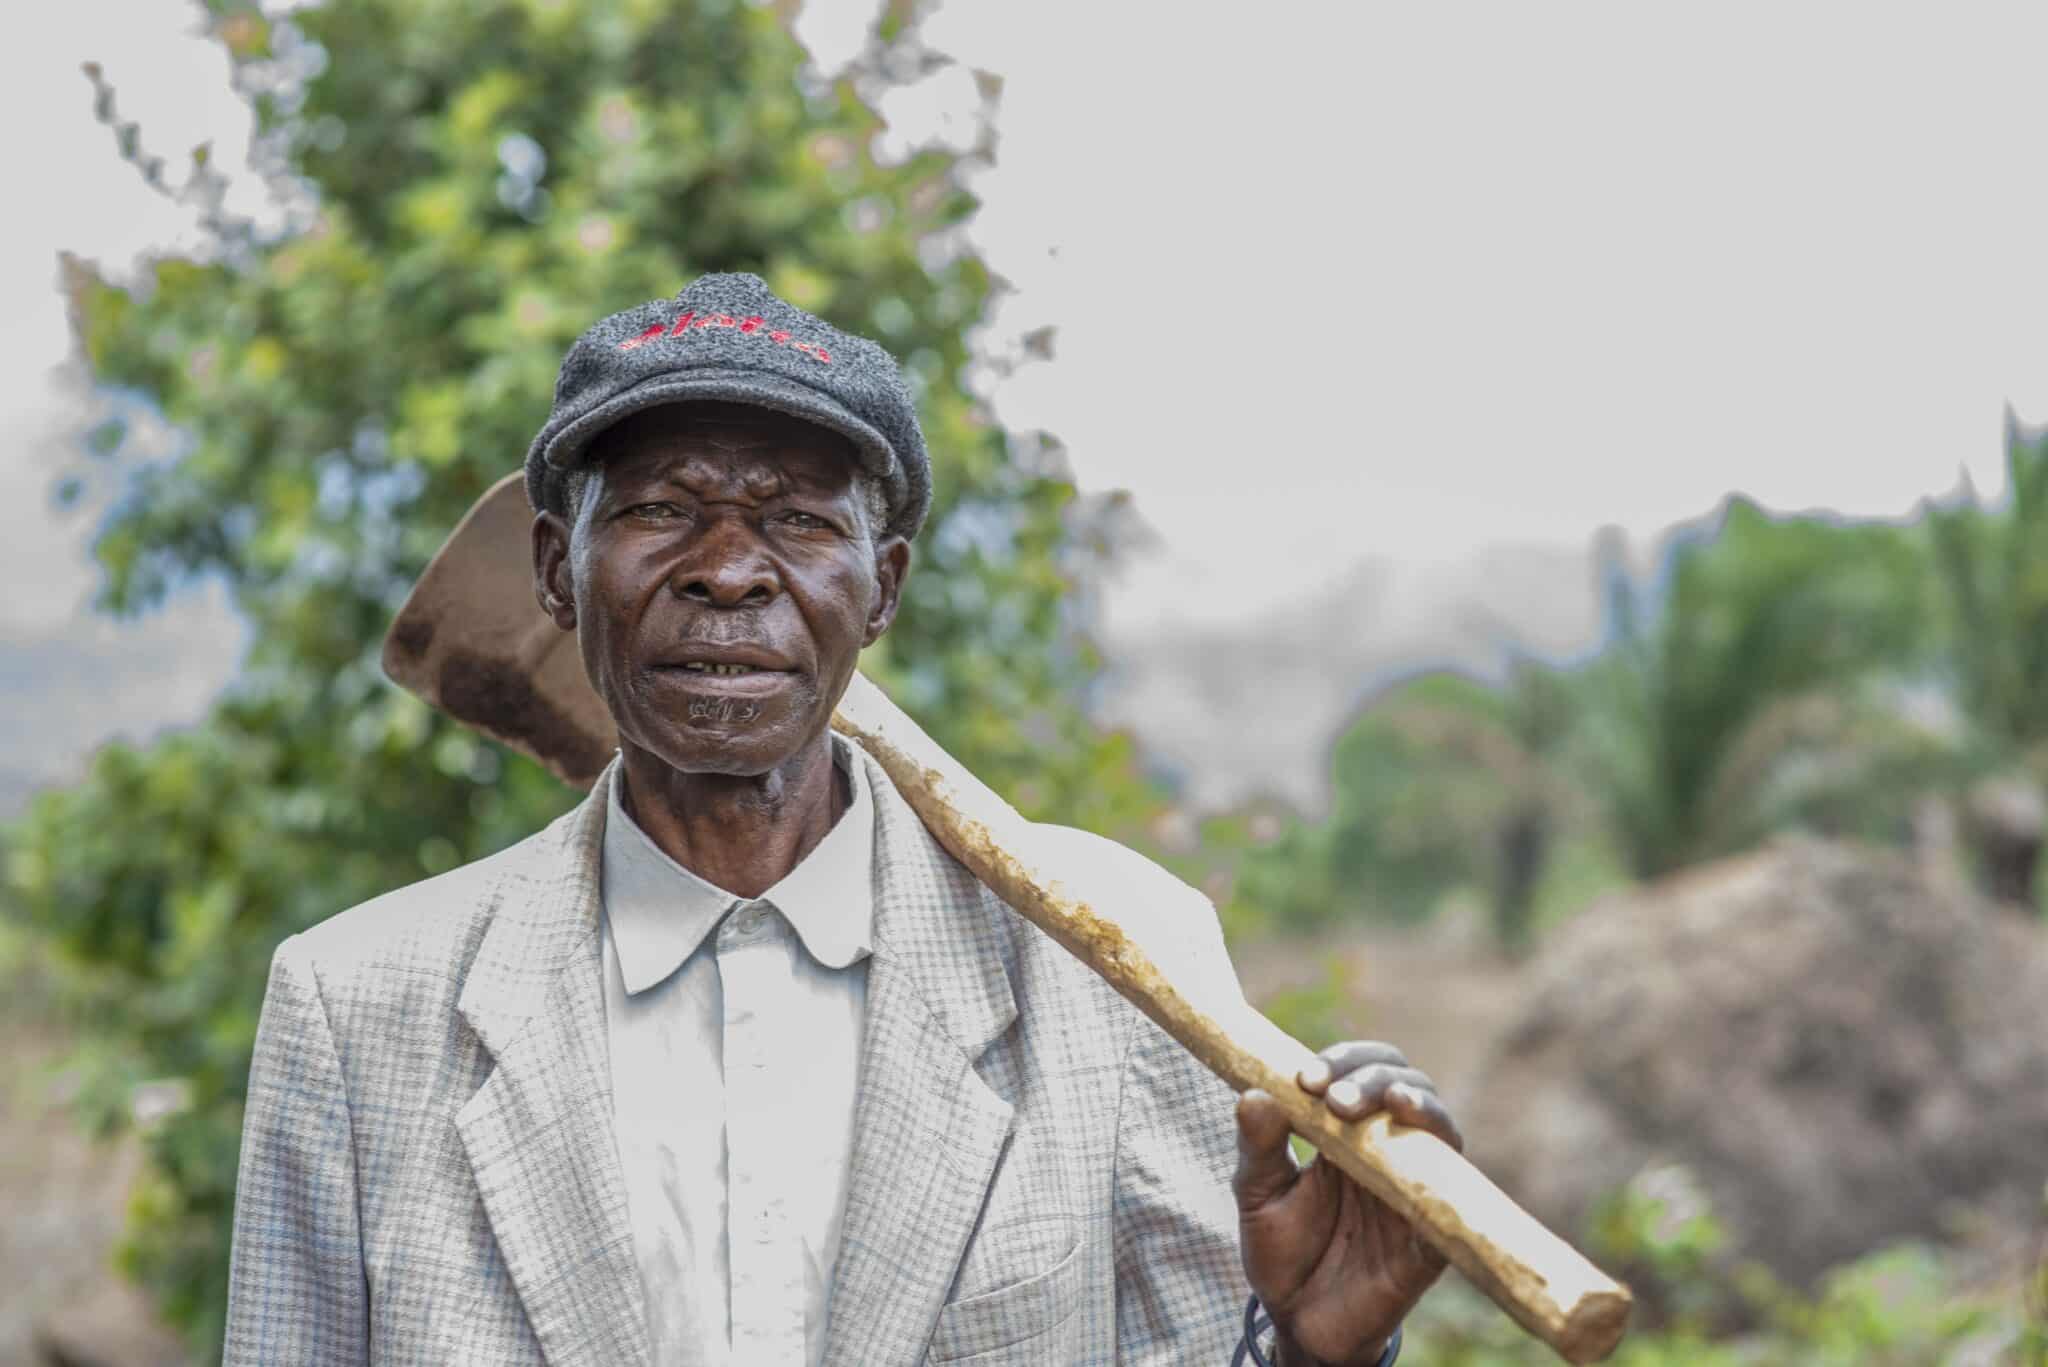 Eduardo, farmer in Angola